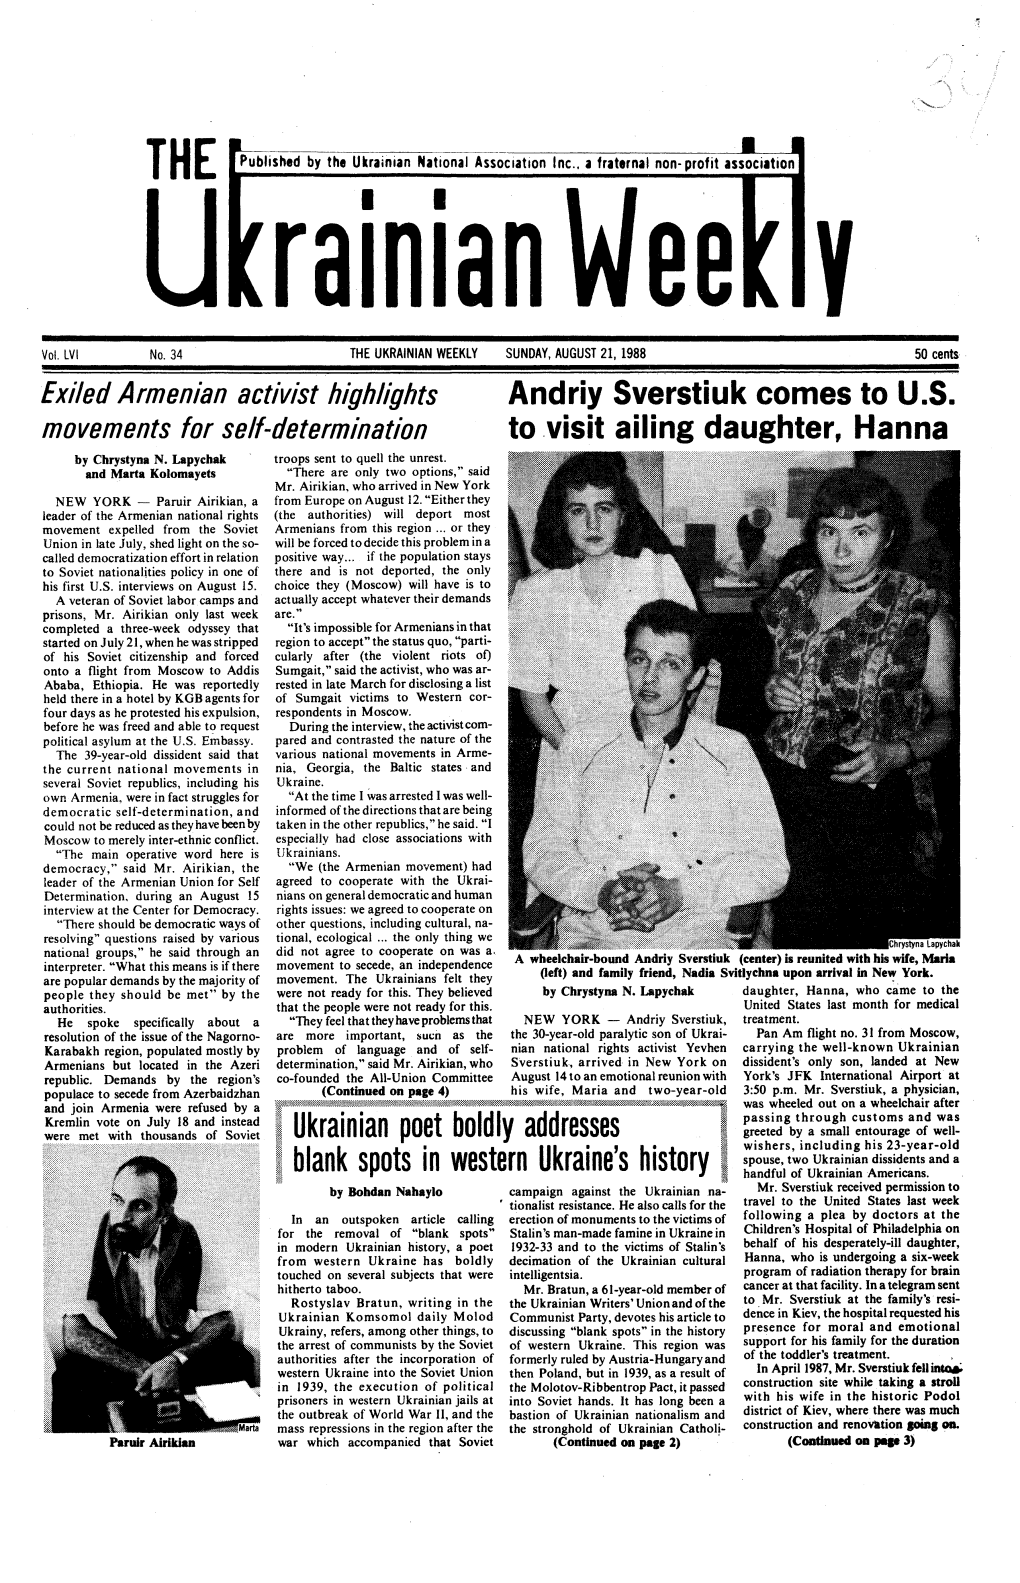 The Ukrainian Weekly 1988